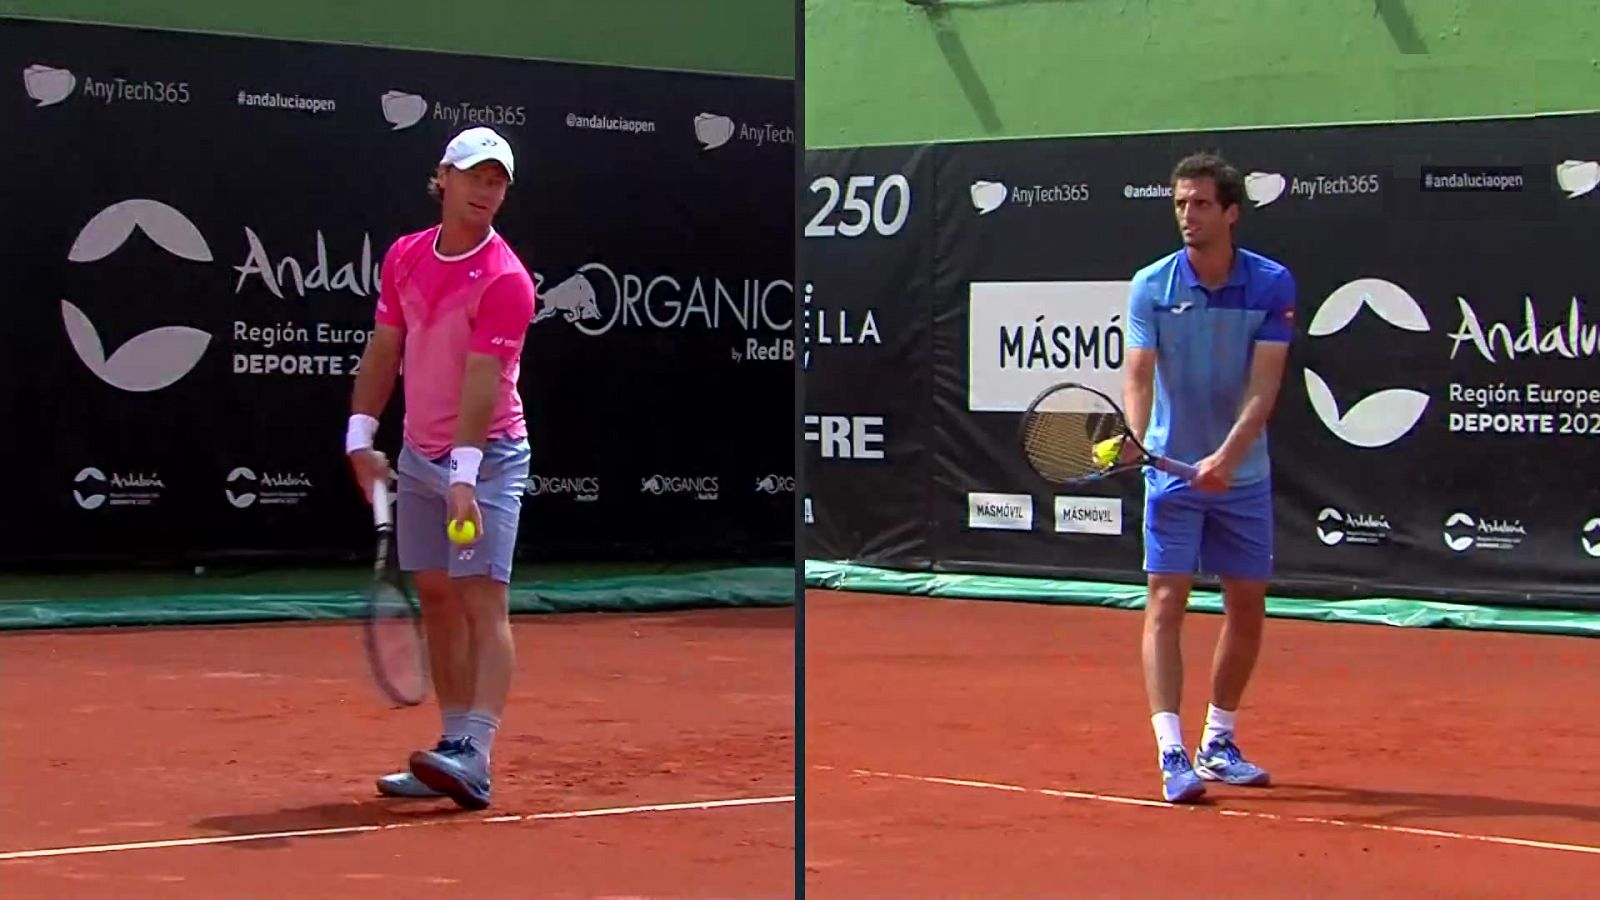 Tenis - ATP 250 Torneo Marbella: A. Ramos-Viñolas - R. Berankis